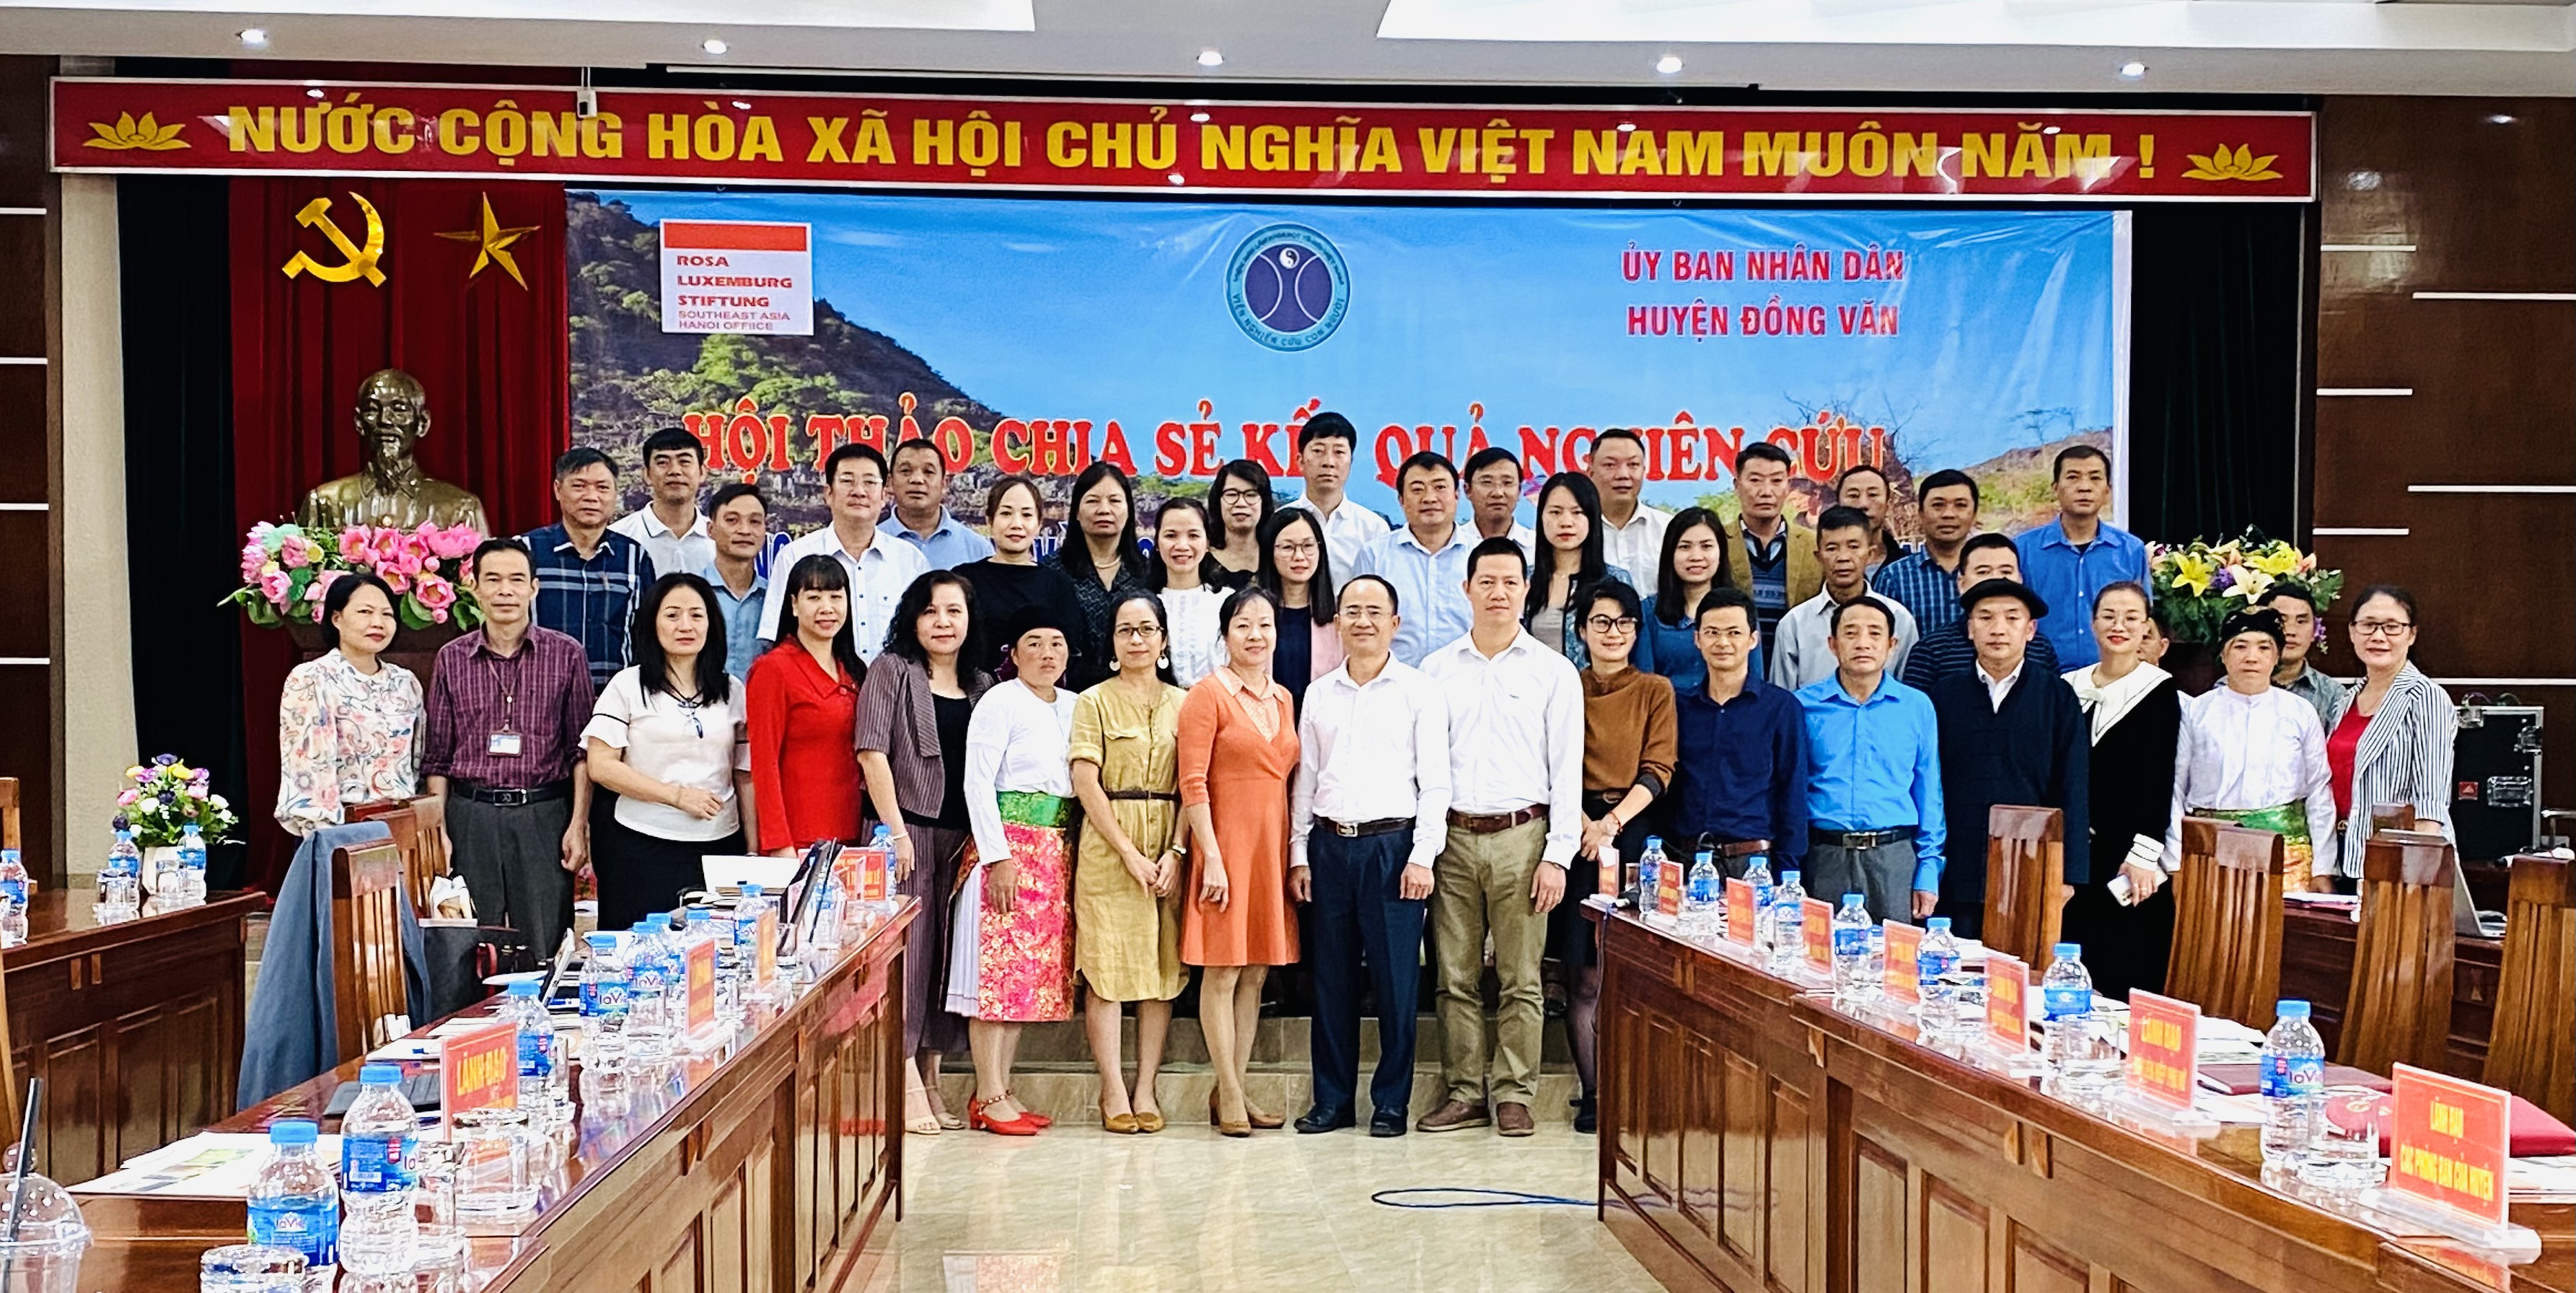 Hội thảo chia sẻ kết quả nghiên cứu hệ thống lương thực và sức khoẻ người Mông